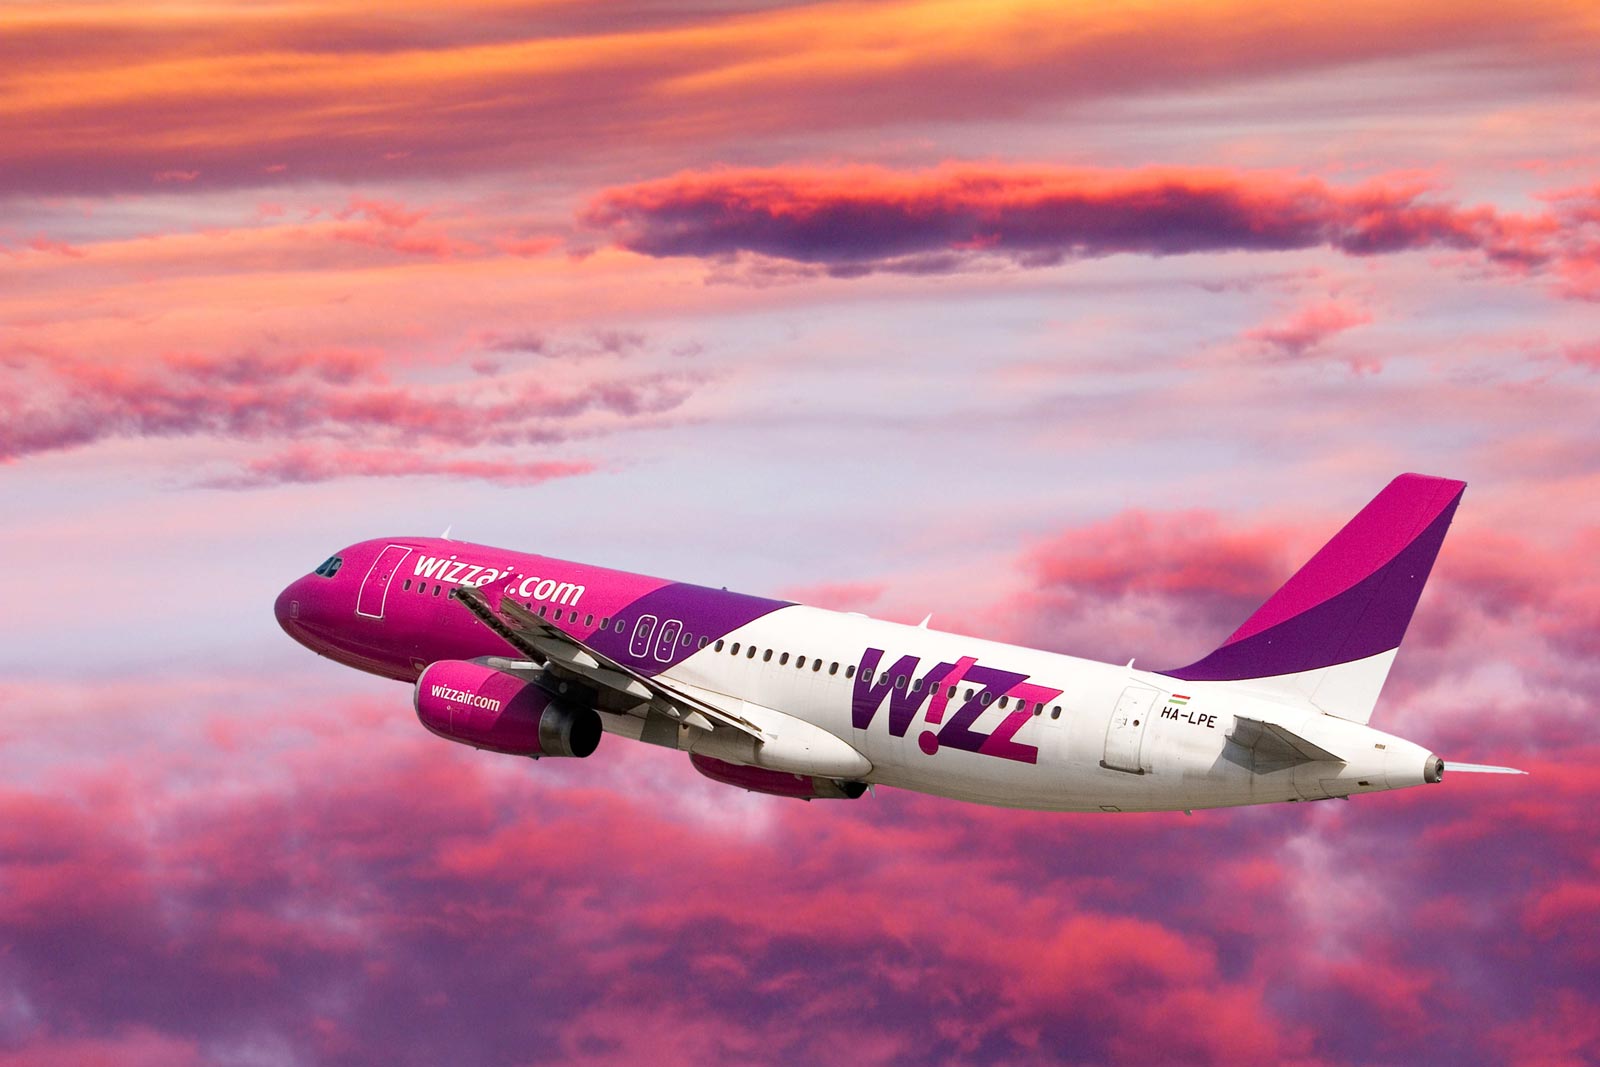 Авиакомпания wizz air — официальный сайт на русском языке